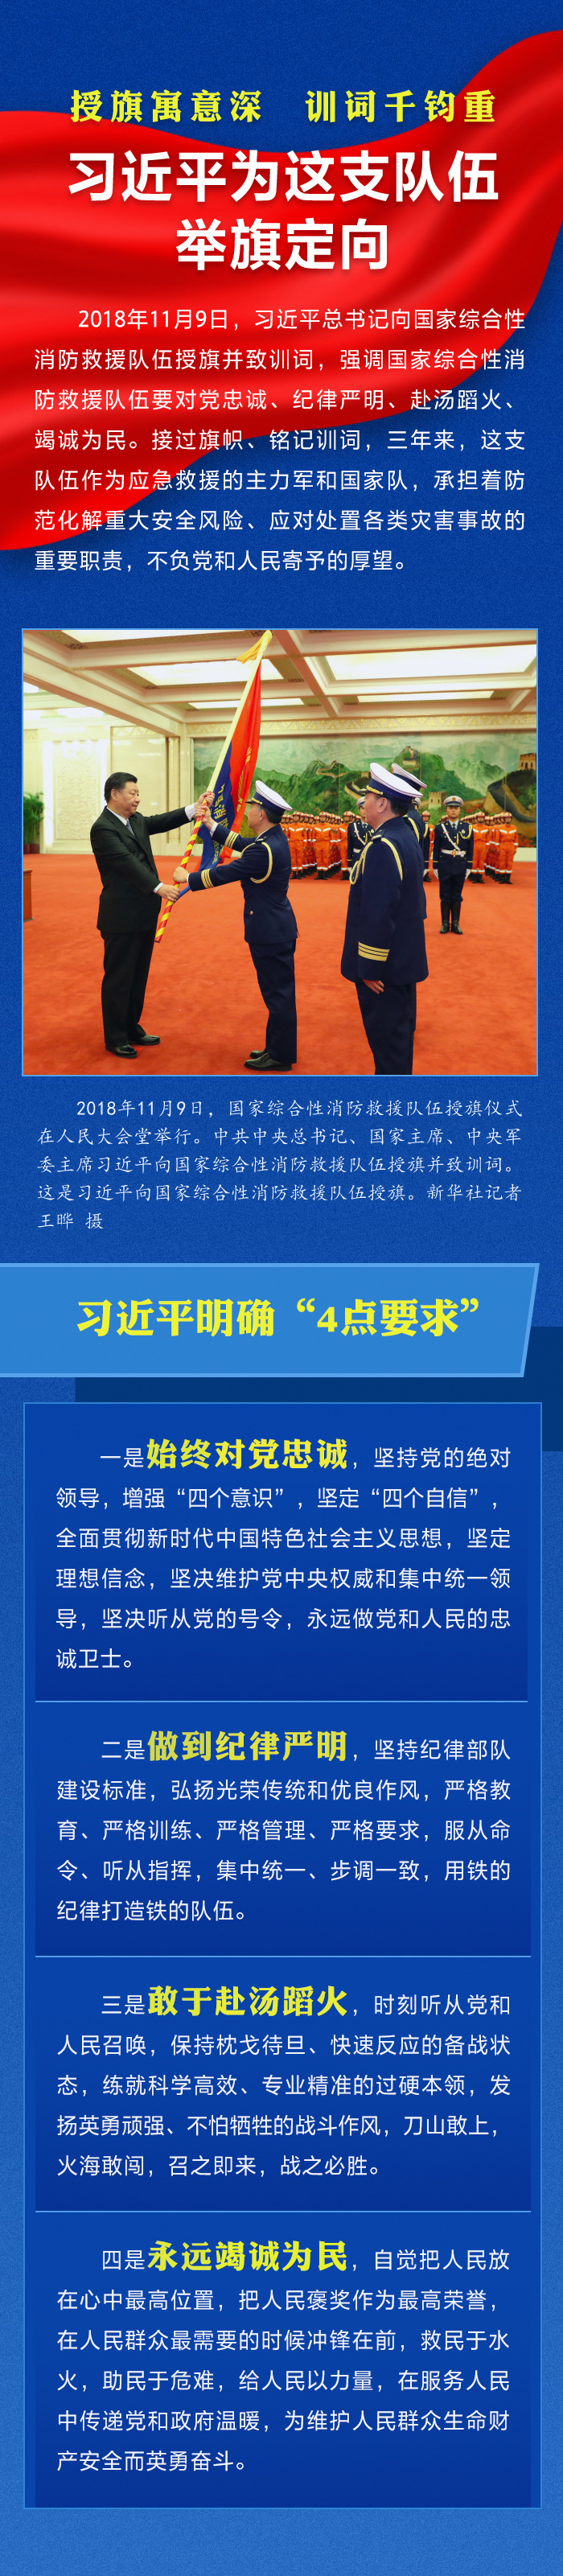 人民网-中国共产党新闻网.jpg